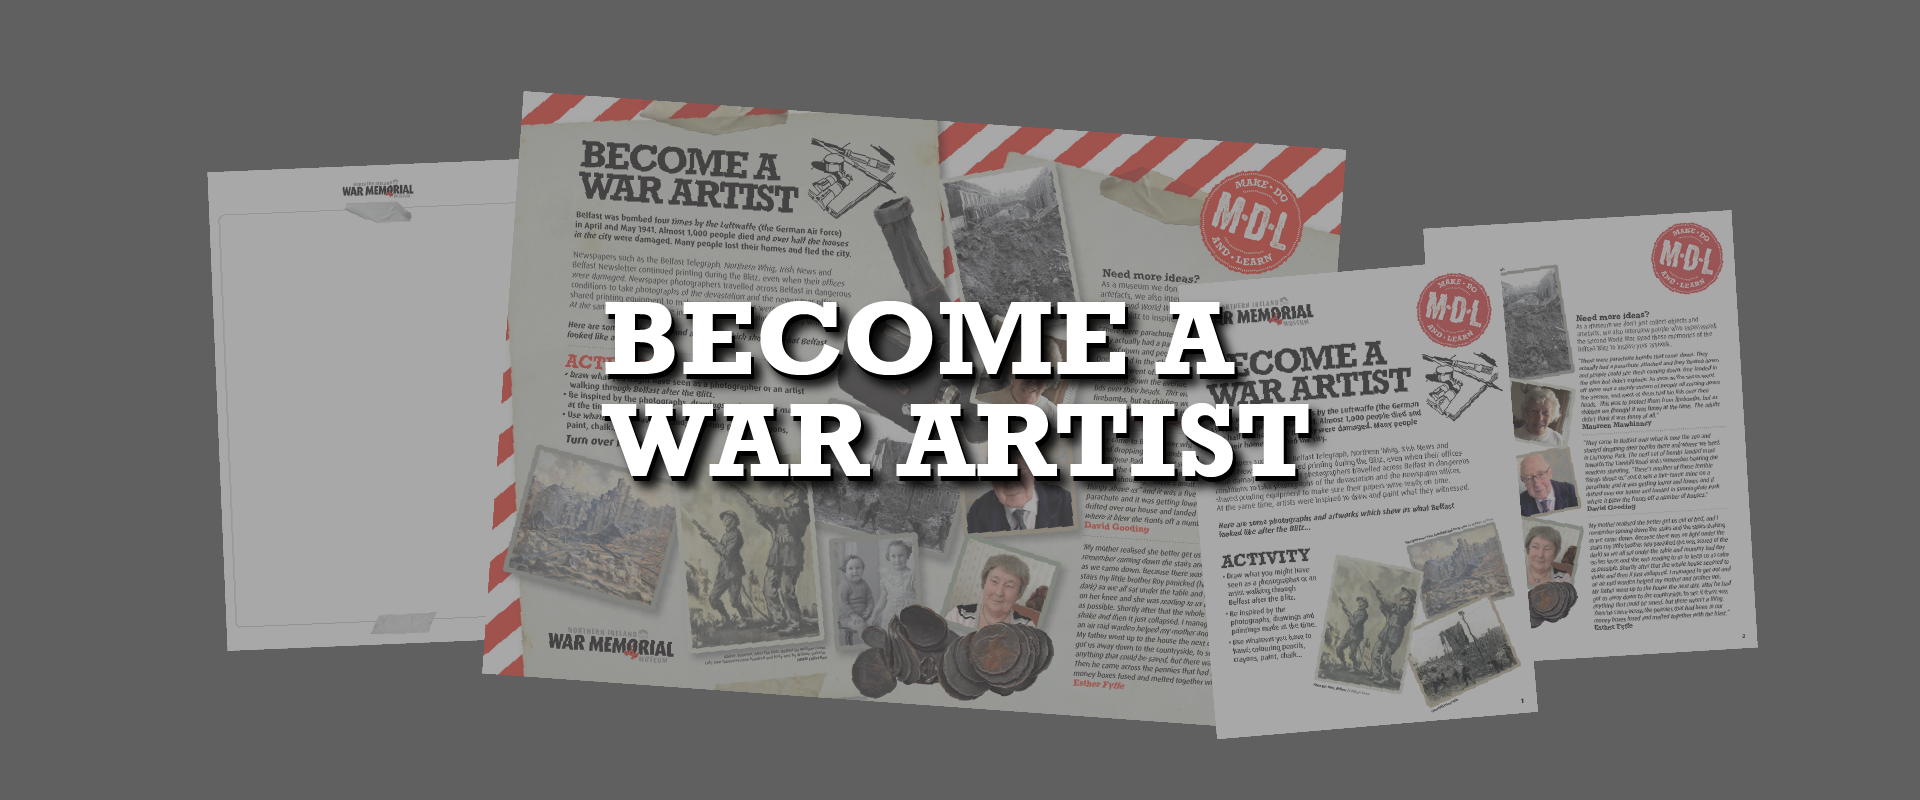 Become A War Artist